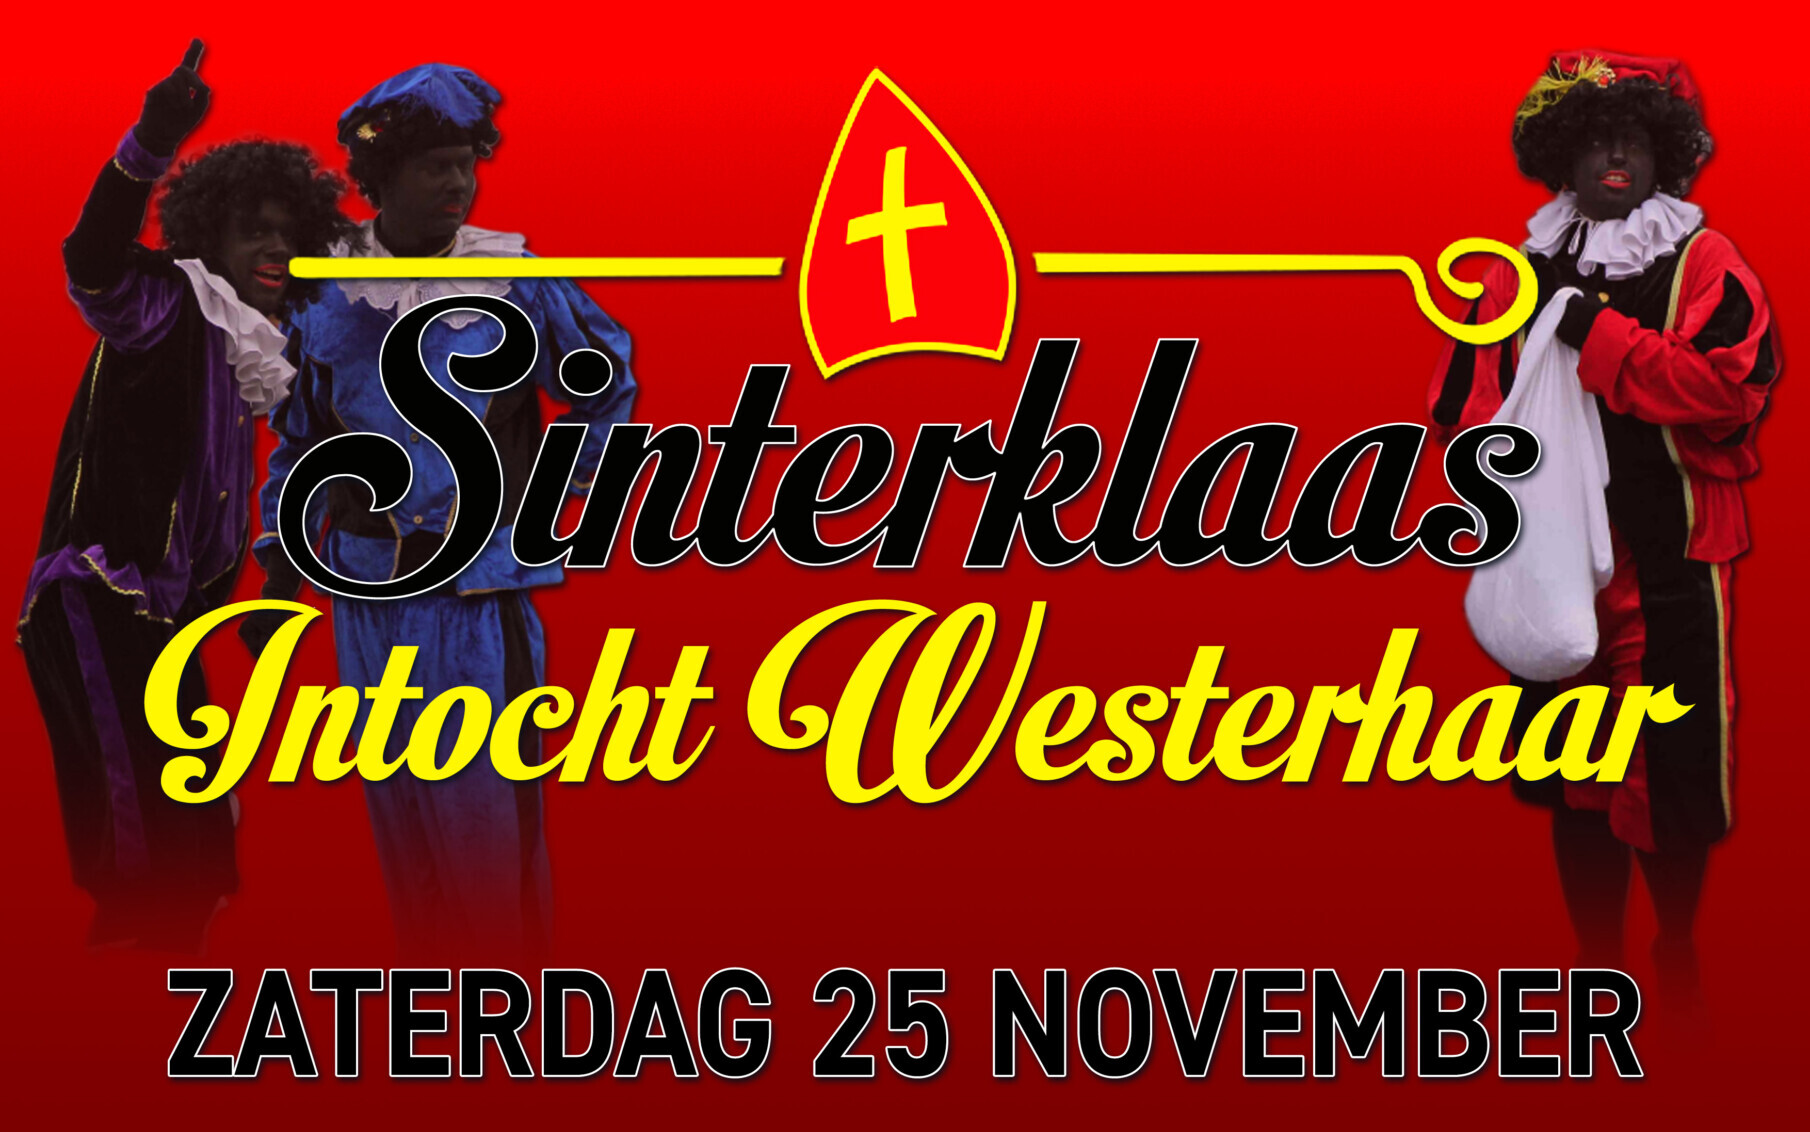 Poster van Sinterklaas Intocht Westerhaar, versierd met mijter en kromstaf.